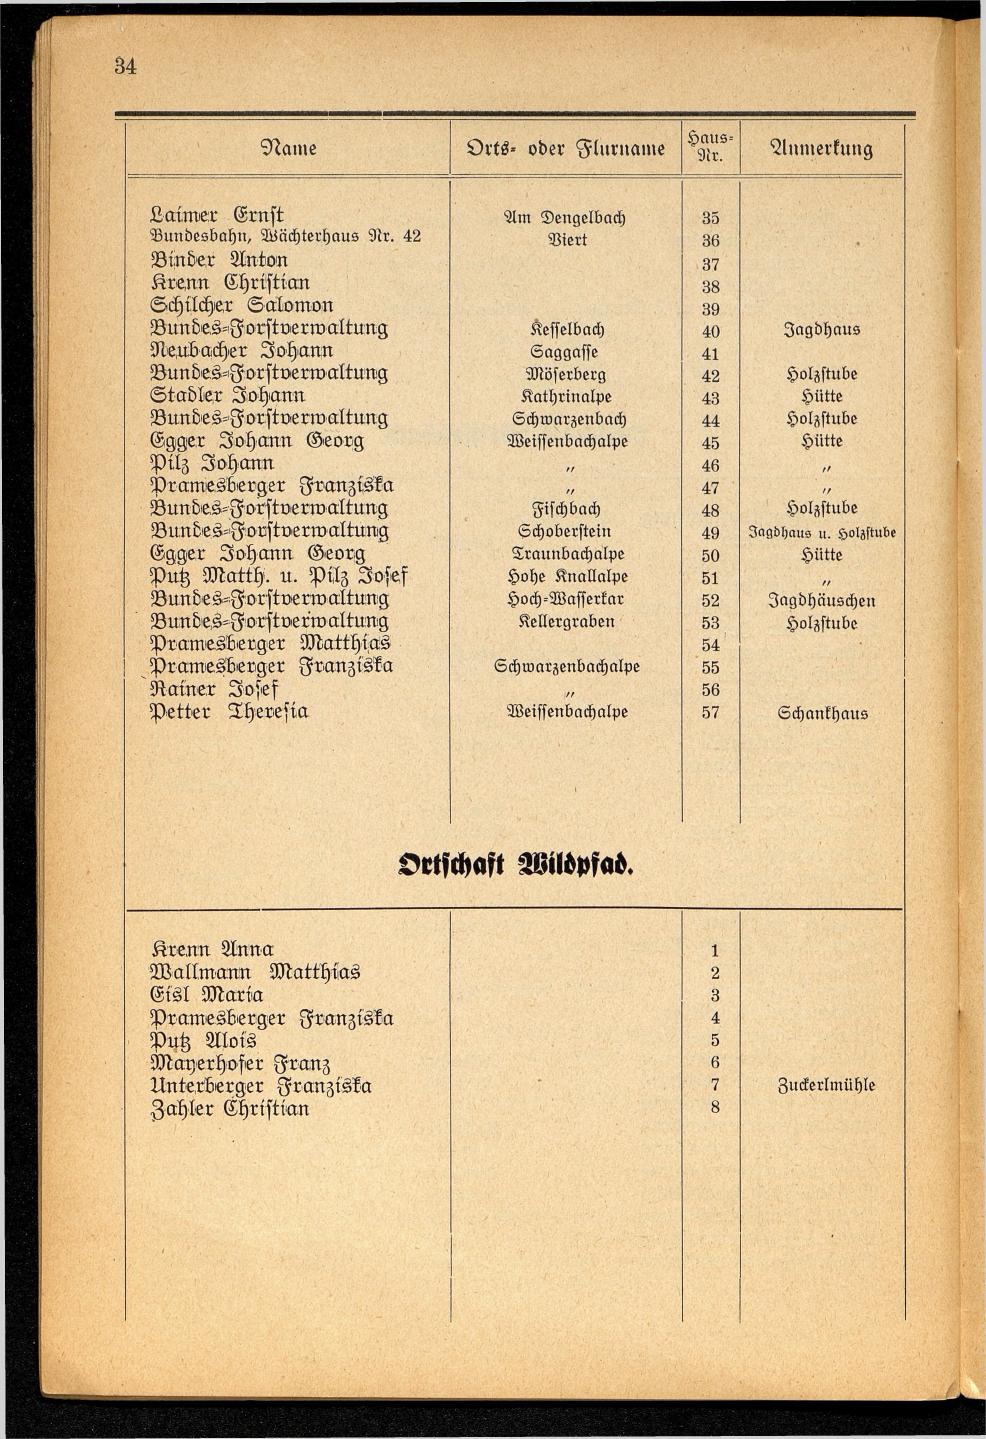 Häuser-Verzeichnis der Gemeinde Goisern nach dem Stande von November 1937 - Seite 36